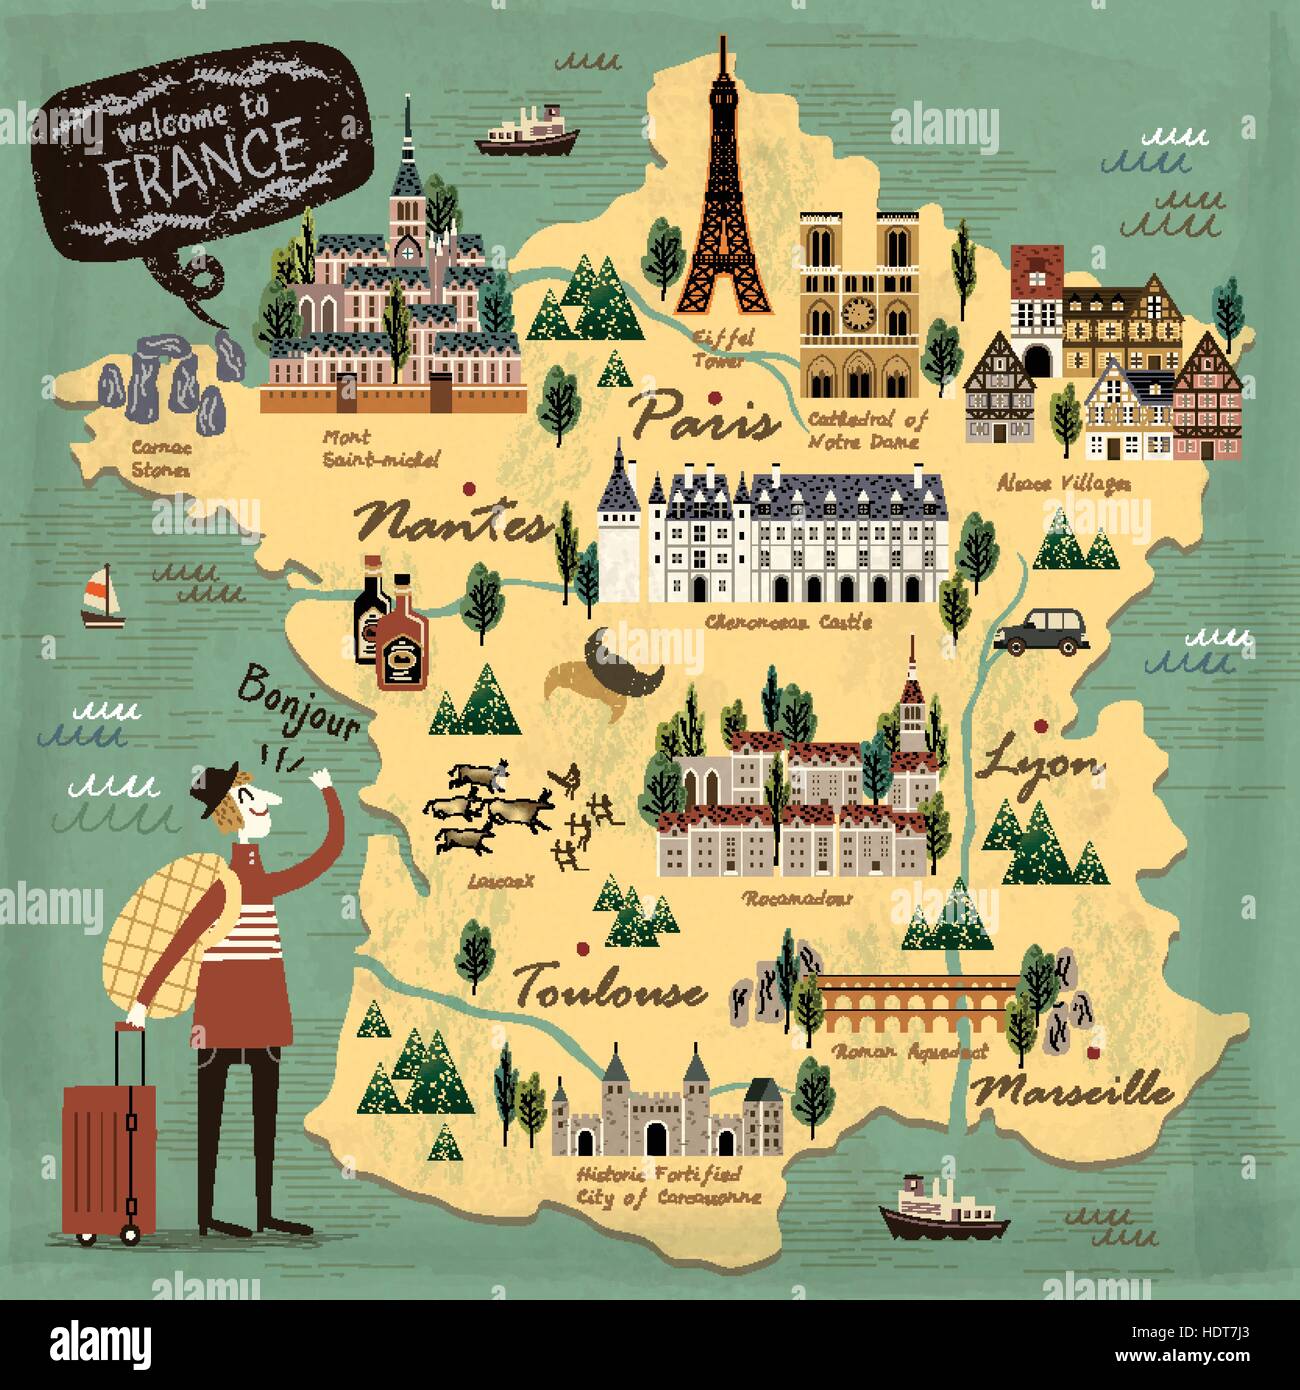 Frankreich Reise-Konzept Abbildung Karte mit Sehenswürdigkeiten Stock Vektor